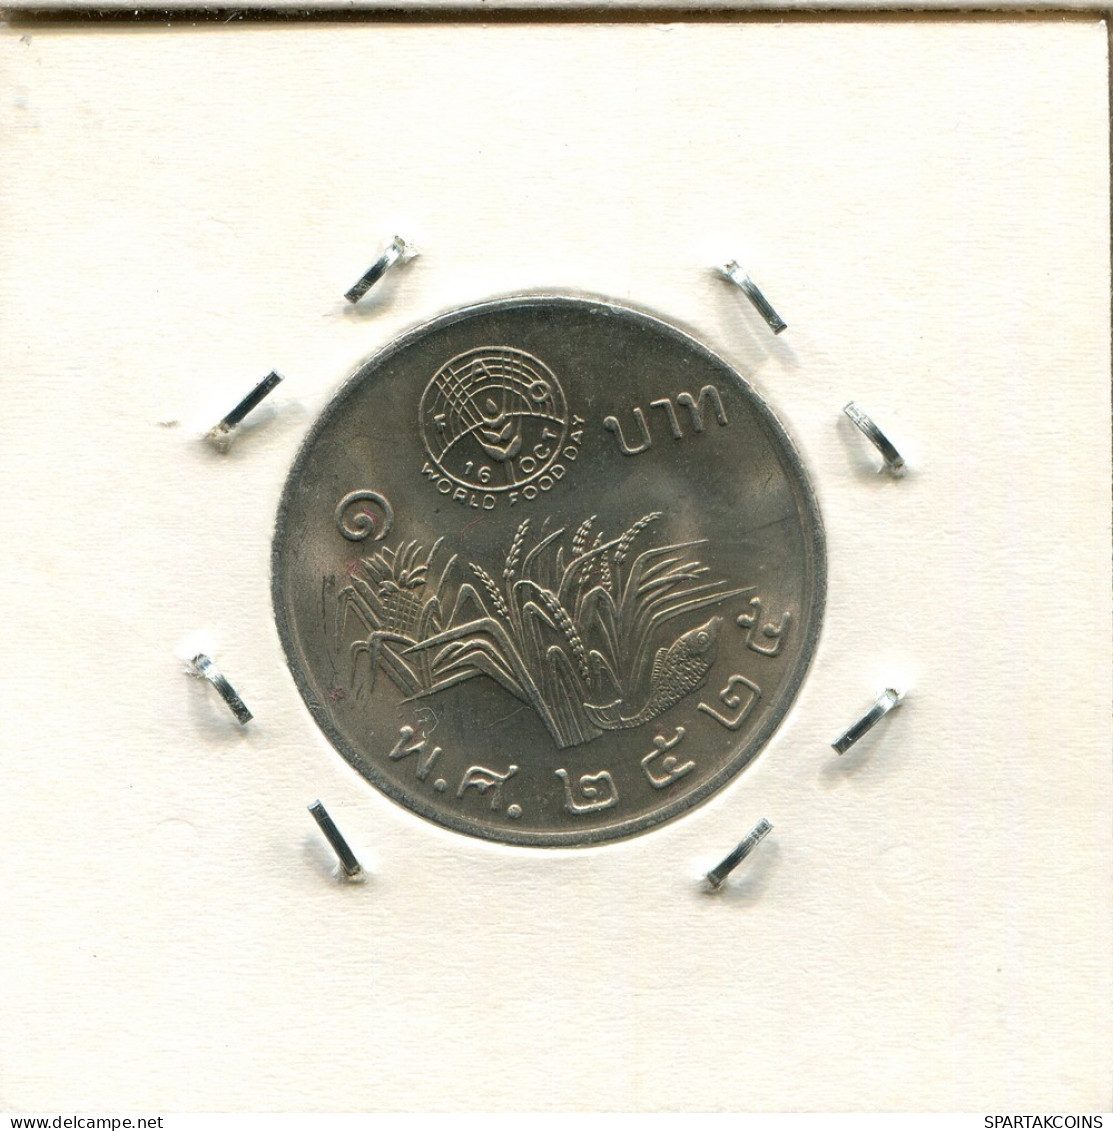 1 BAHT 1982 THAILAND Münze #AR997.D.A - Thaïlande